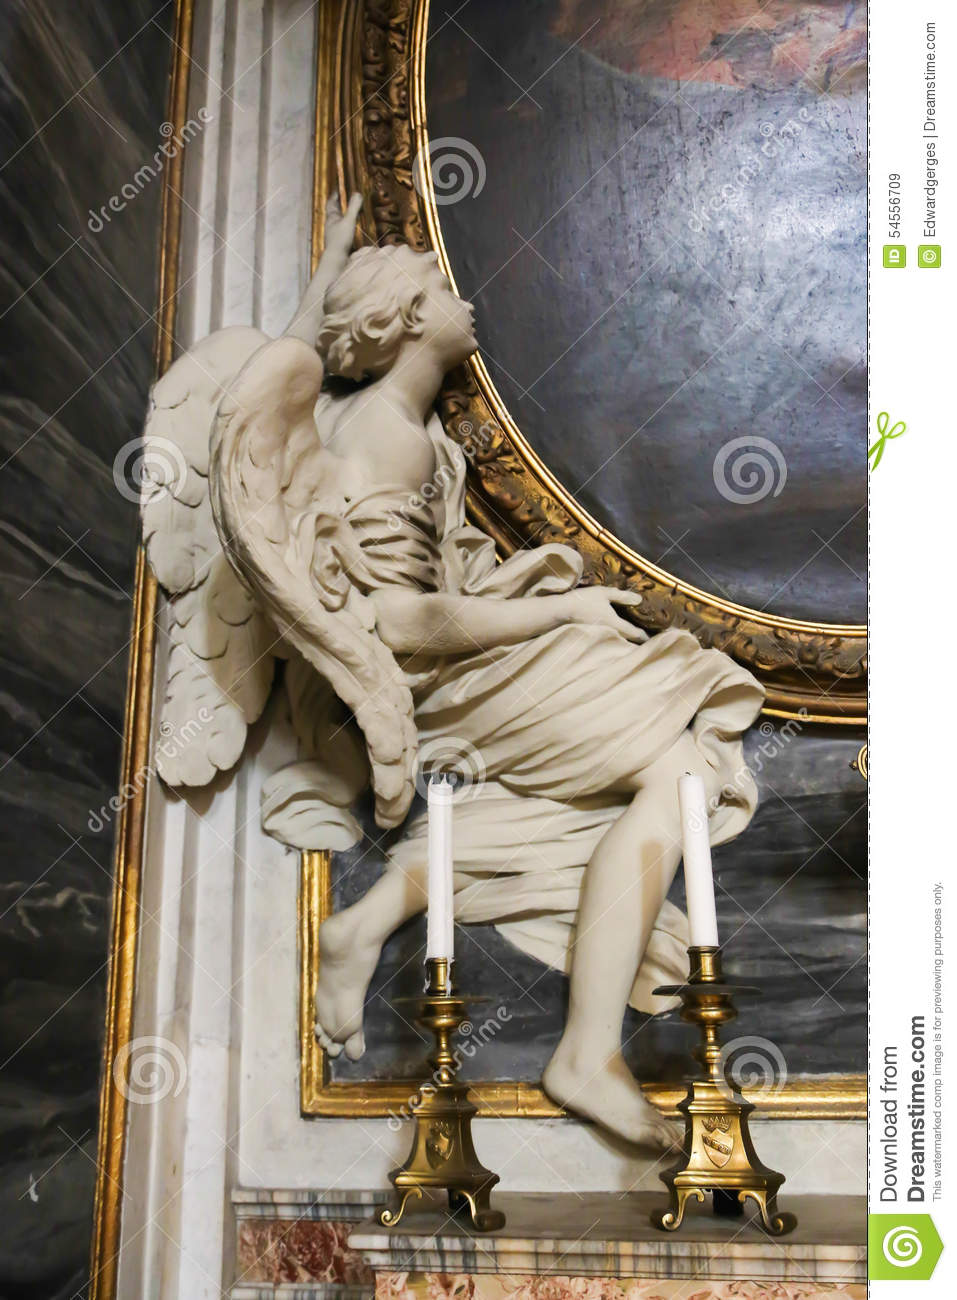 Resultado de imagen para imagen de angel en el vaticano